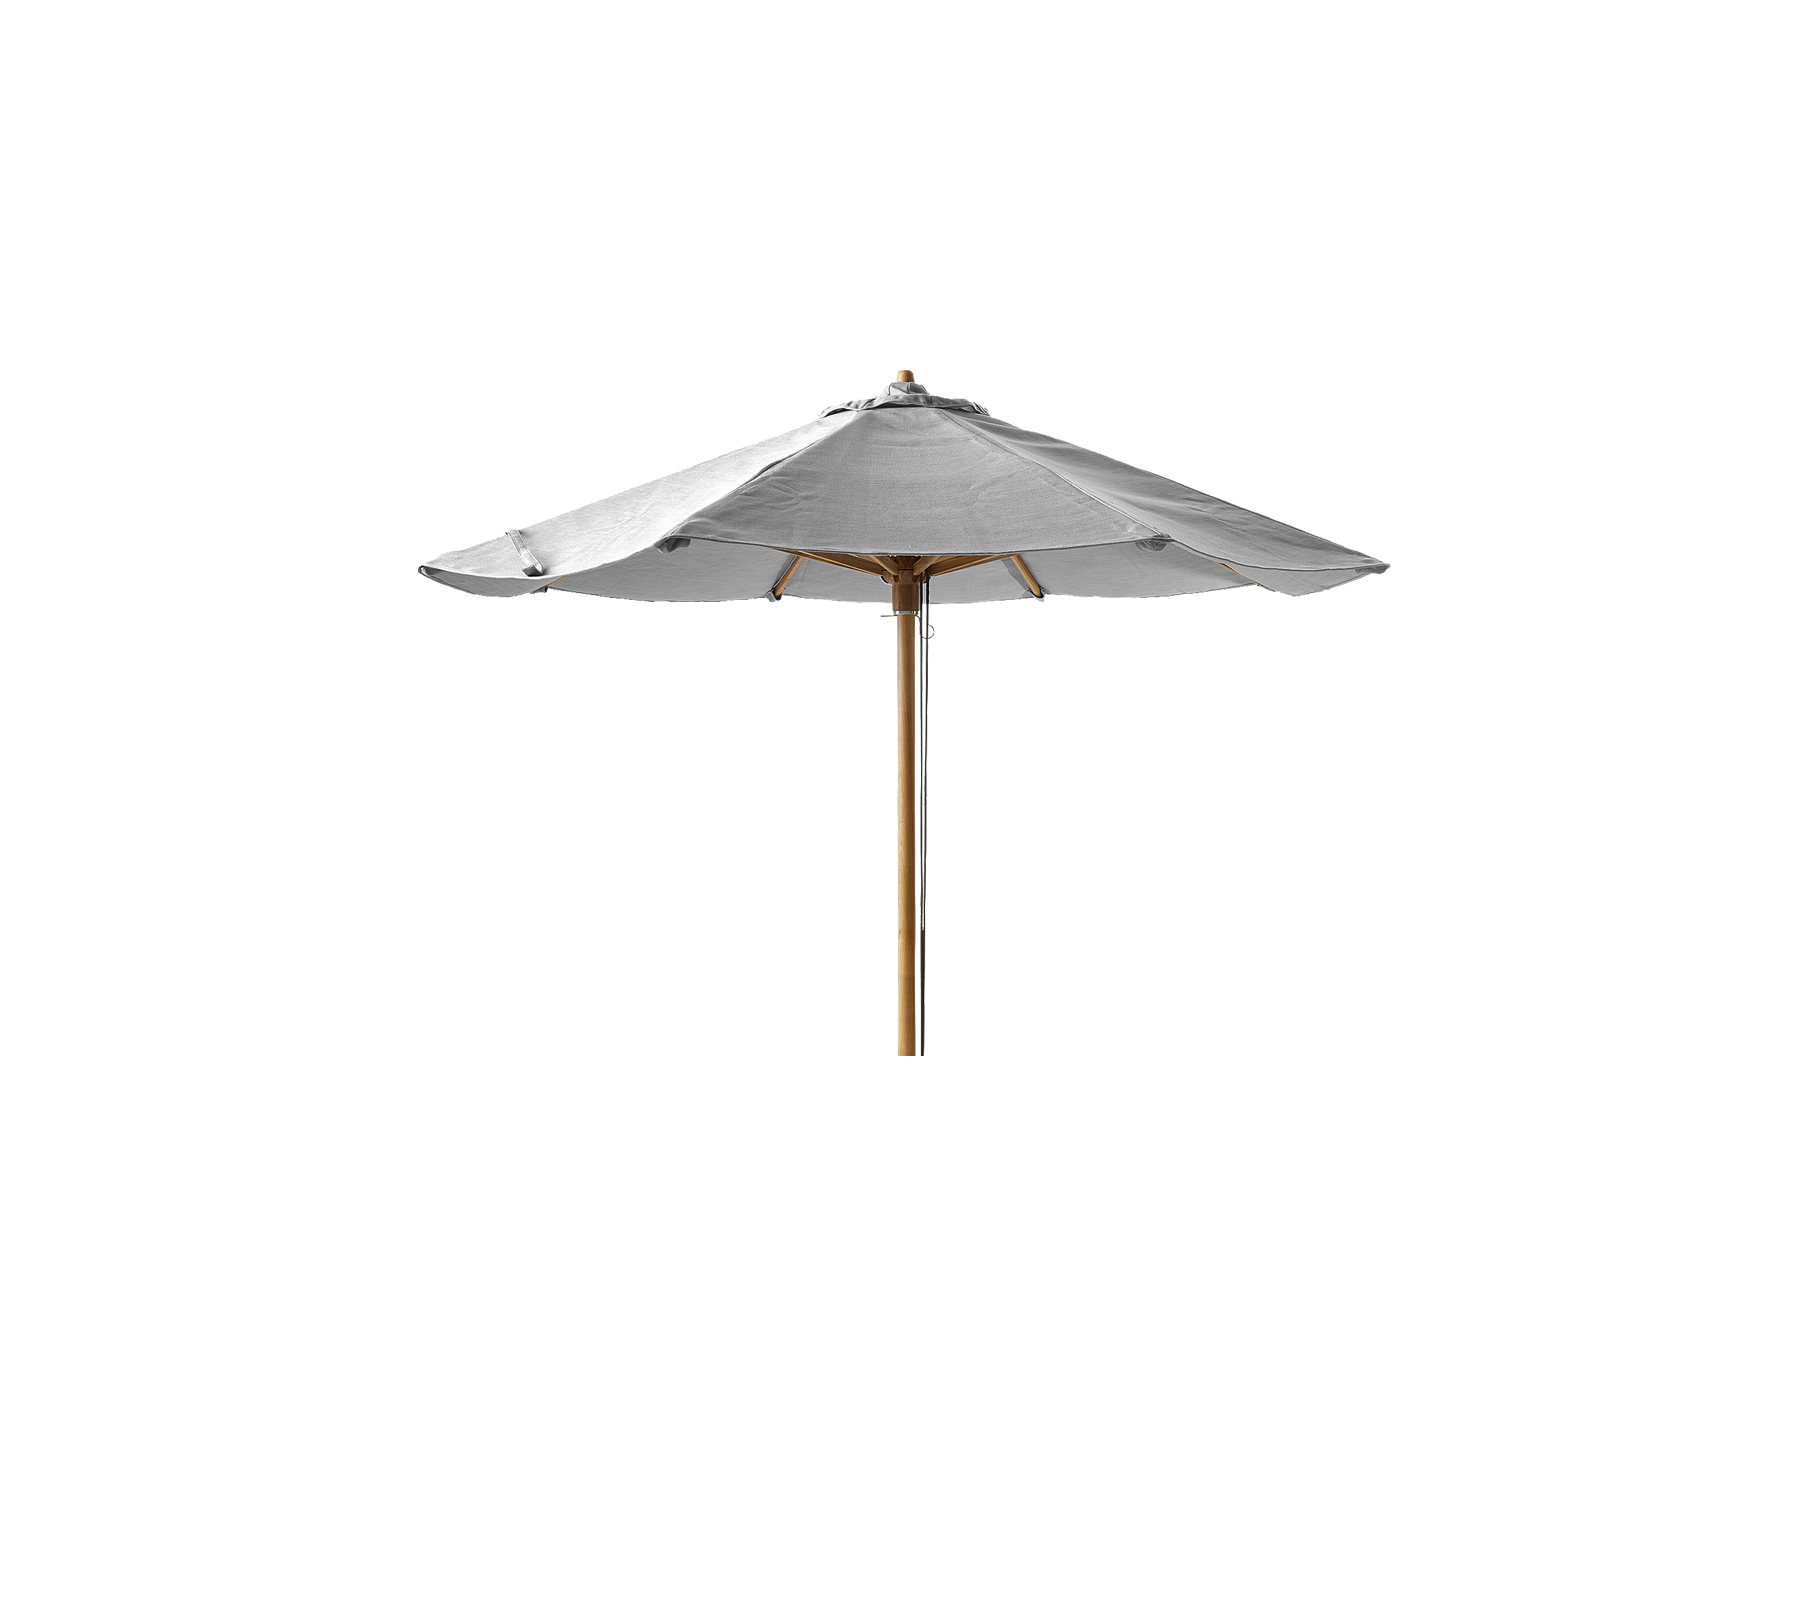 Classic parasoll m/dragsnöre, dia. 2,4 m, låg, för Peacock dagbädd